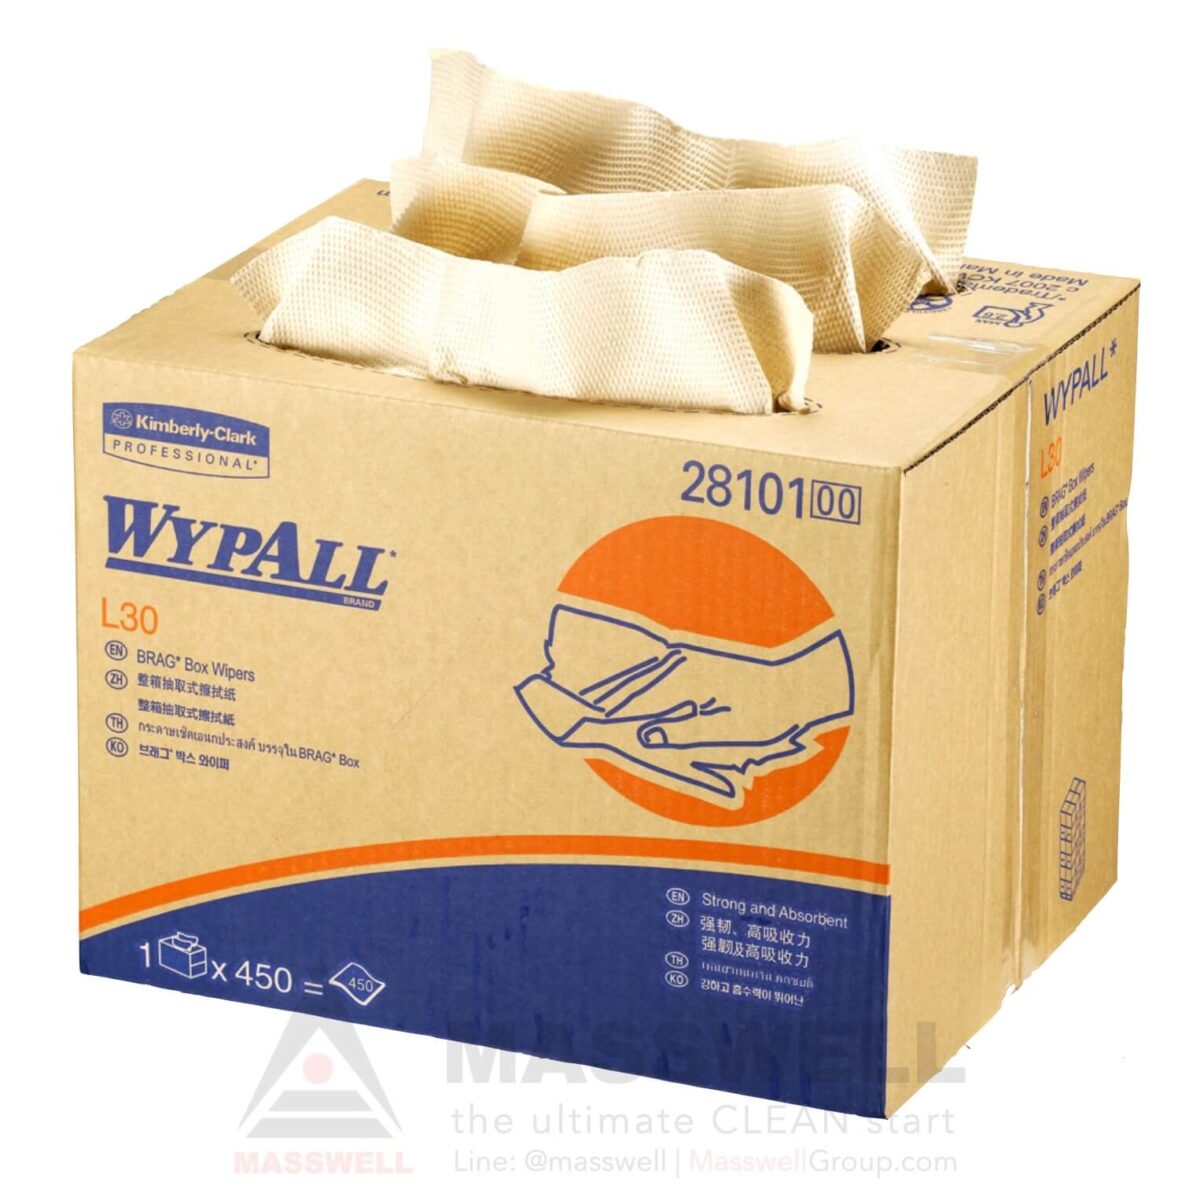 28101 กระดาษเช็ดทำความสะอาด WYPALL* L30 Brag* Box Wipers - 450 แผ่น